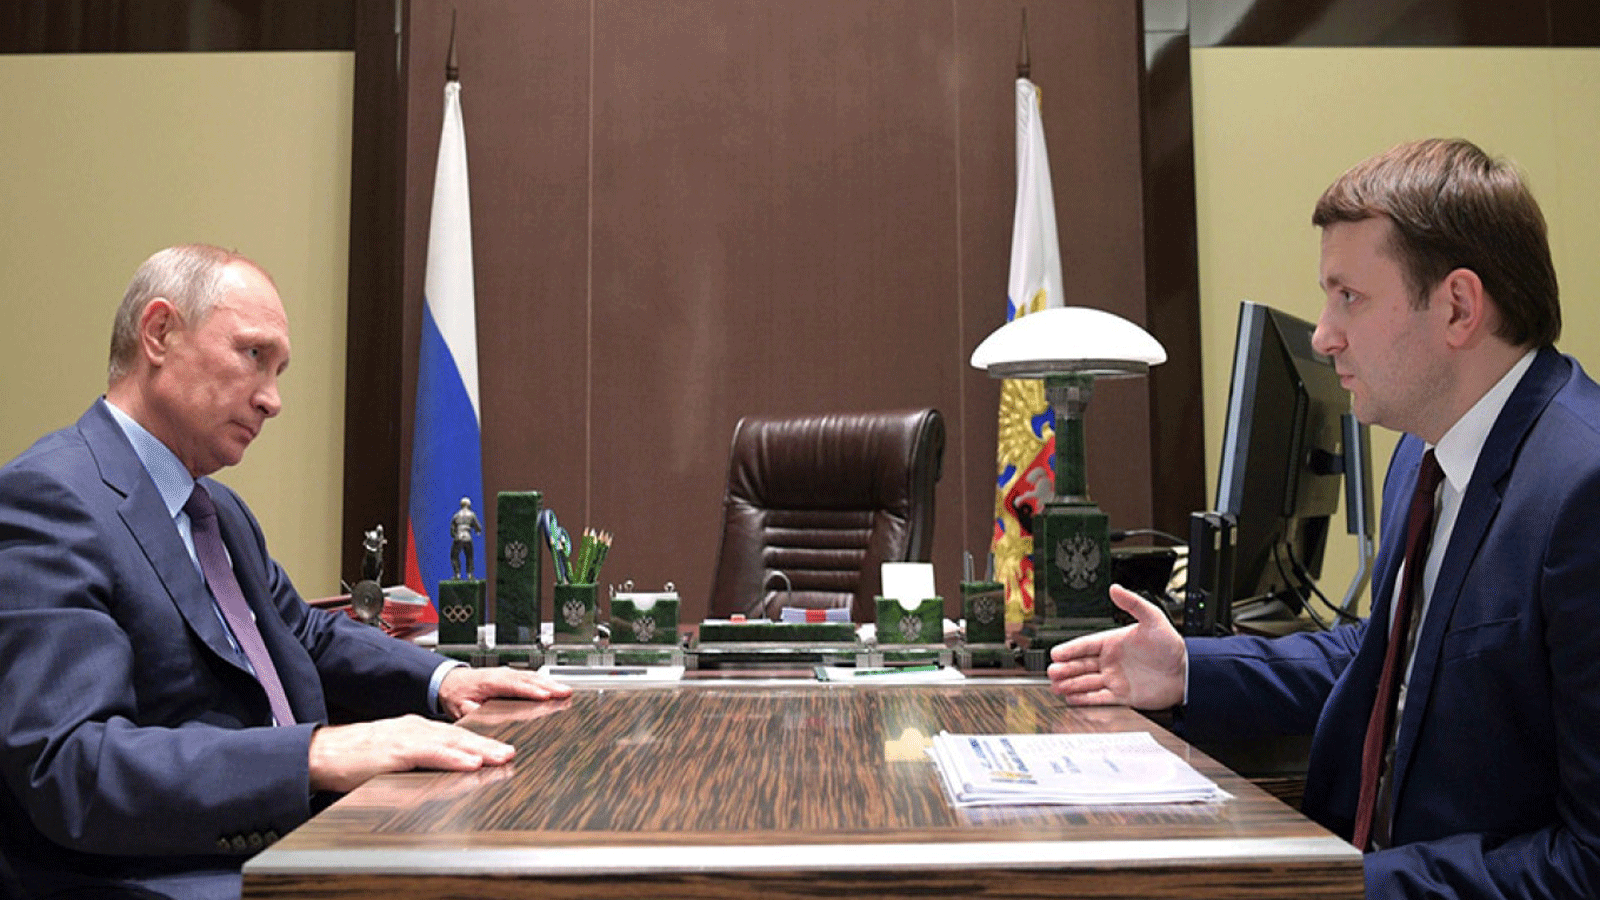 مستشار الكرملين ماكسيم أوريشكين يتحدث مع الرئيس الروسي فلاديمير بوتين